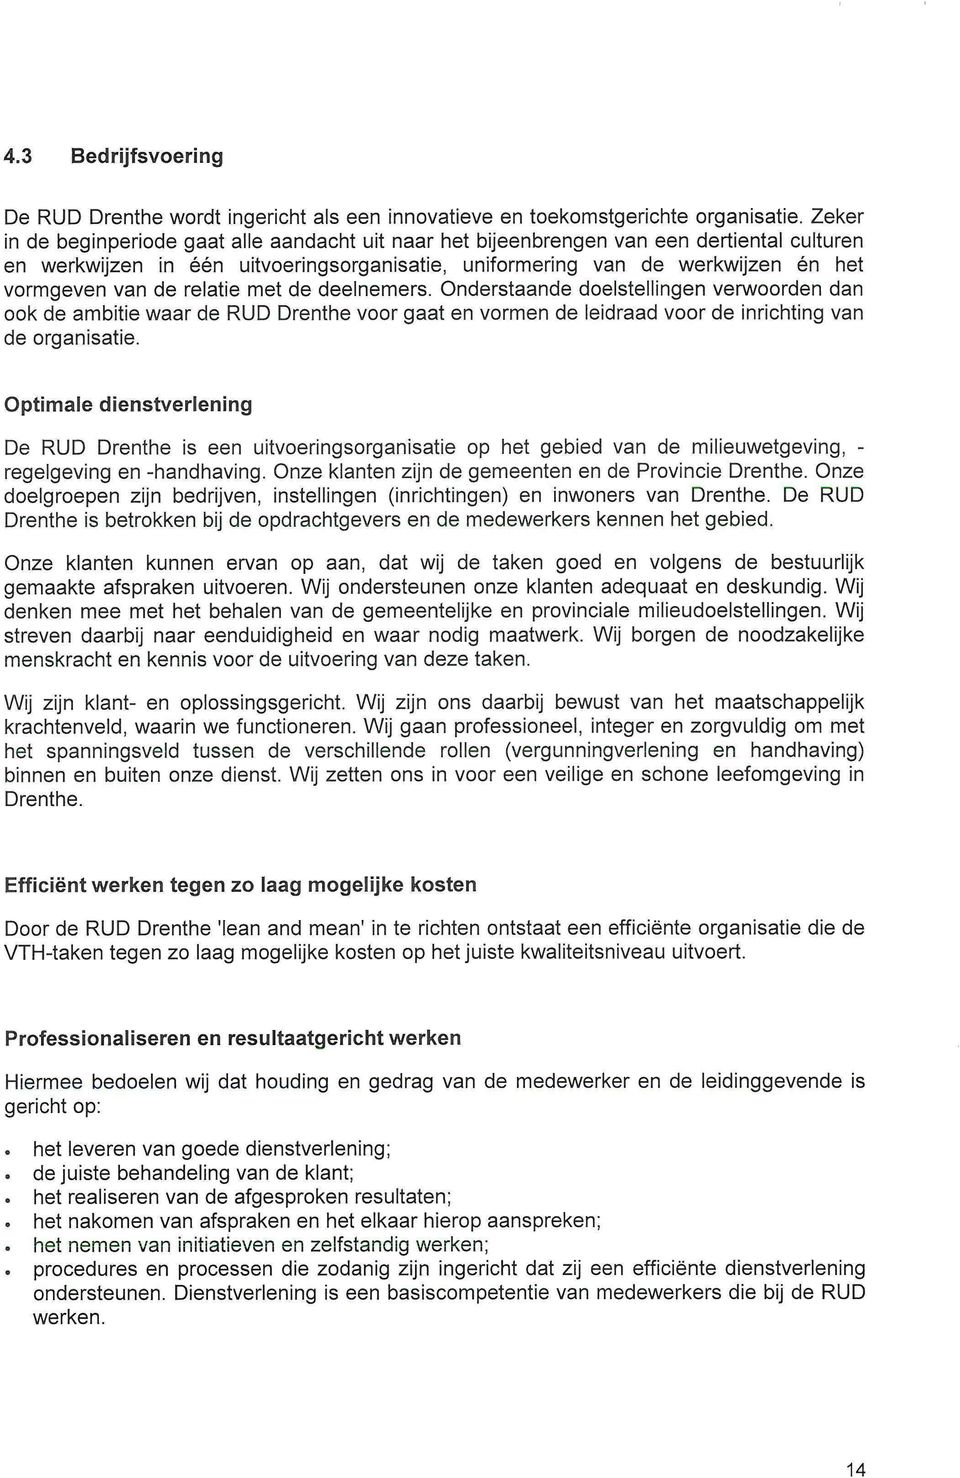 relatie met de deelnemers. Onderstaande doelstellingen verwoorden dan ook de ambitie waar de RUD Drenthe voor gaat en vormen de leidraad voor de inrichting van de organisatie.